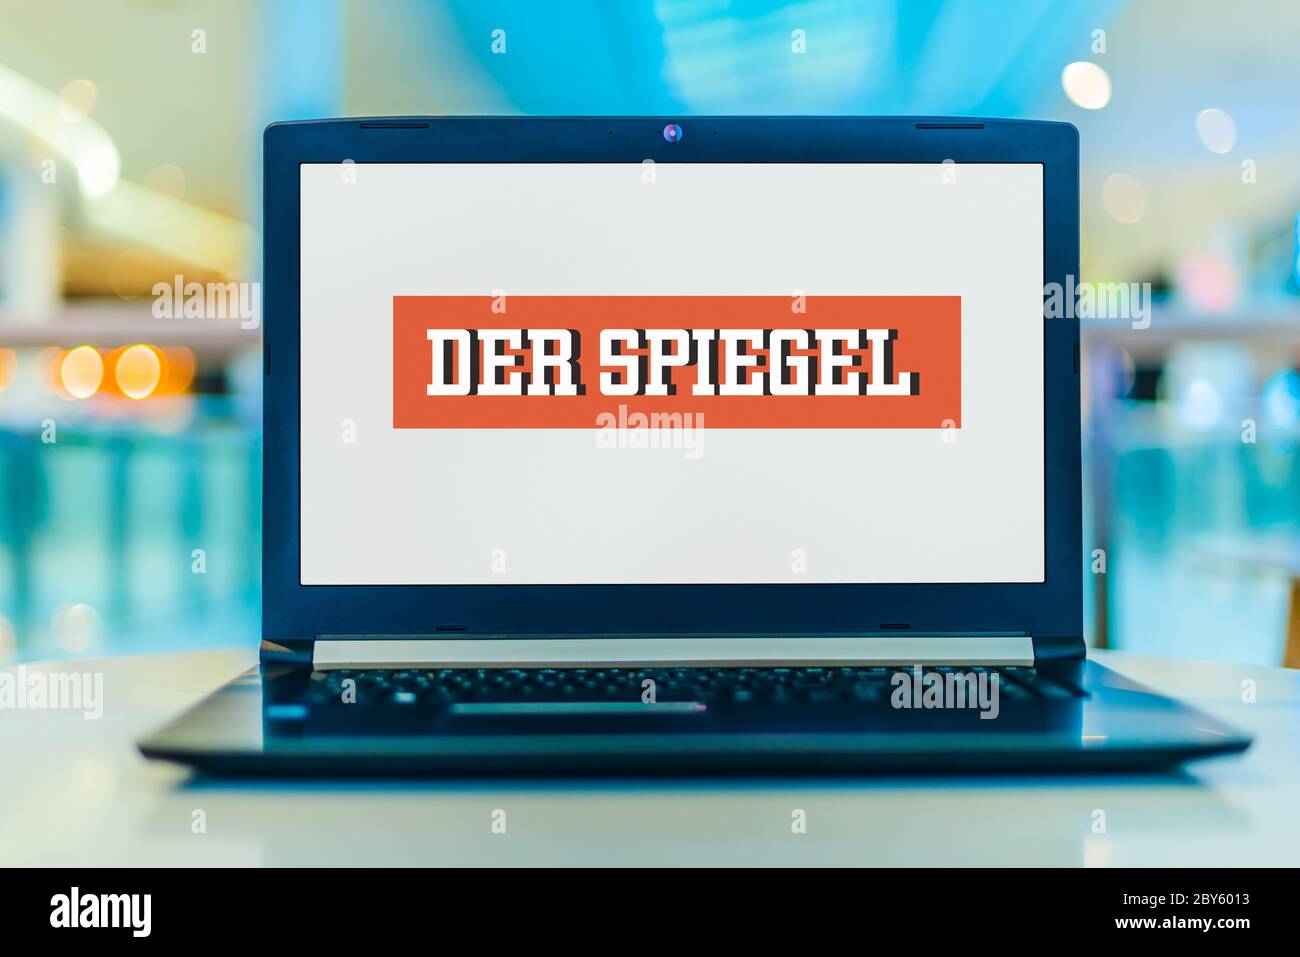 POZNAN, POL - 14 DE FEBRERO de 2020: Ordenador portátil mostrando el logotipo de der Spiegel, una revista de noticias alemana de centro izquierda publicada en Hamburgo Foto de stock